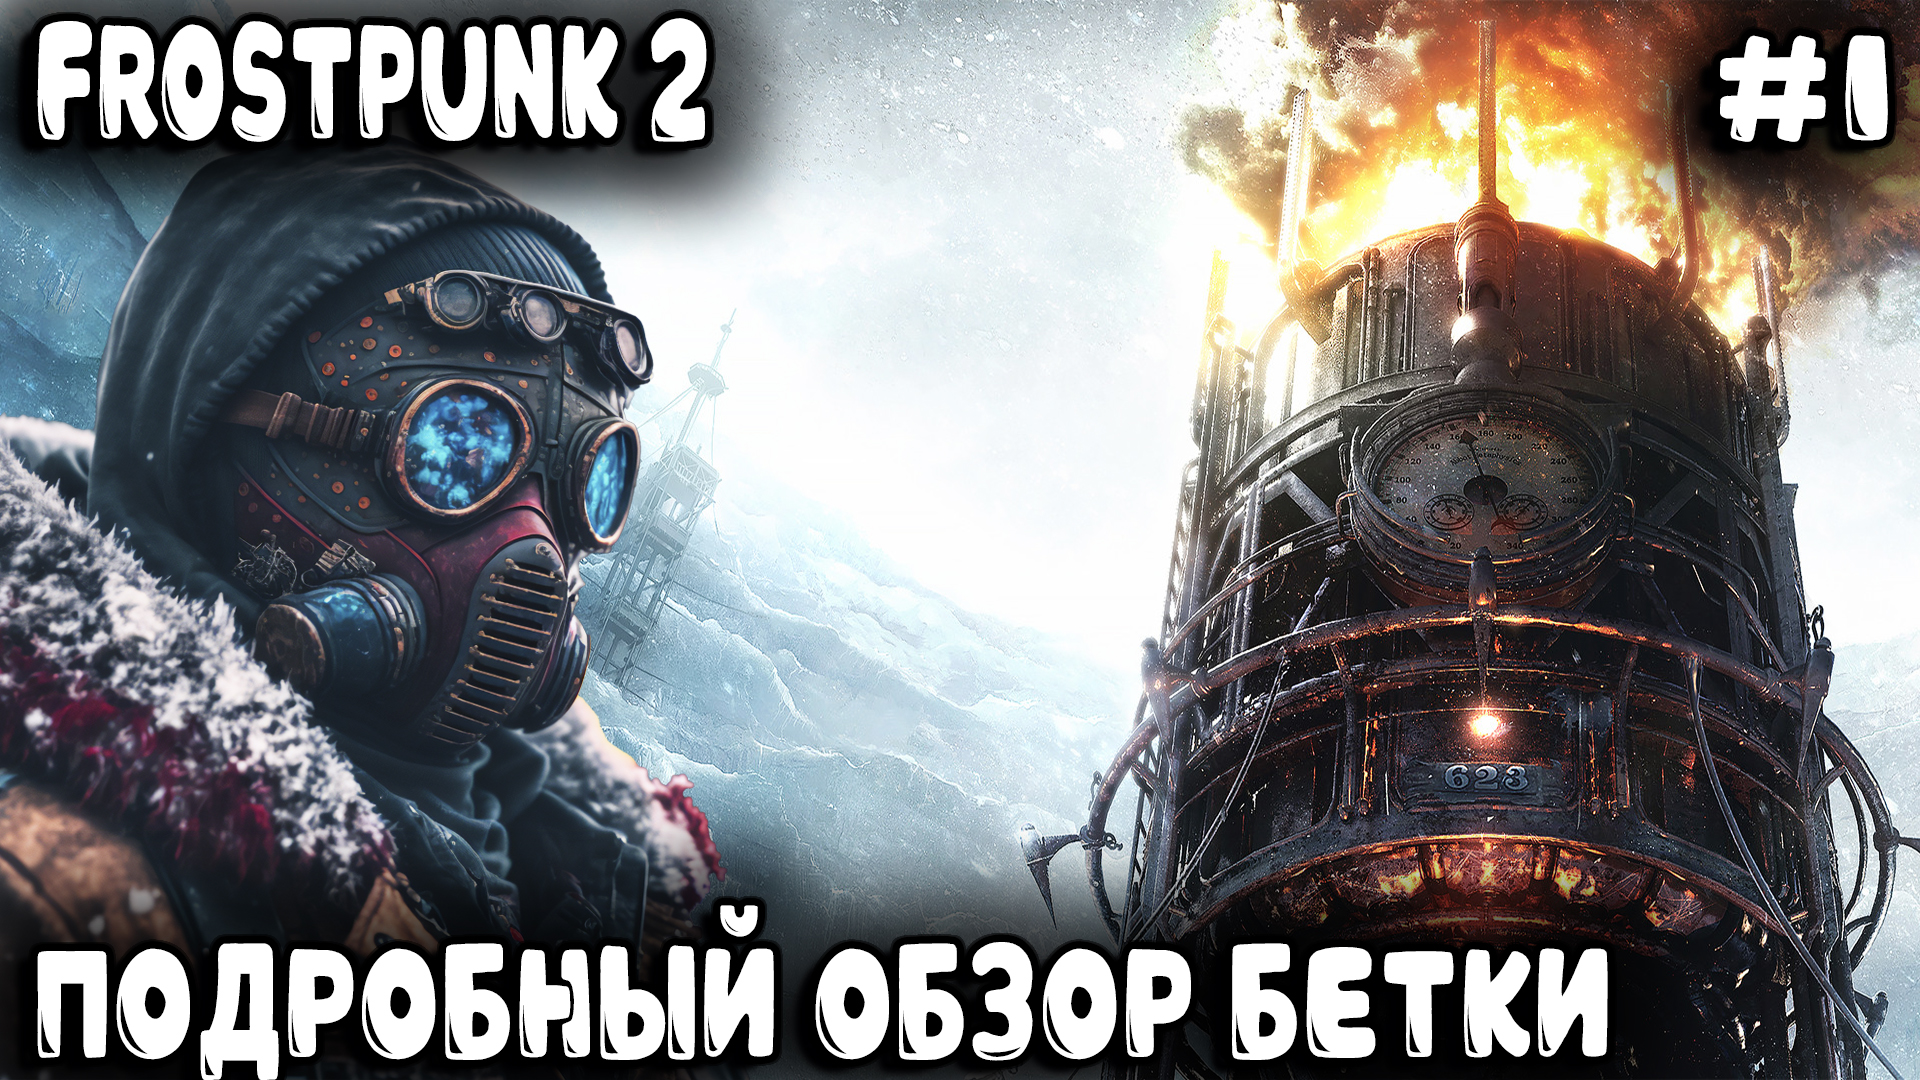 Frostpunk 2 - подробный обзор новых возможностей геймплея и прохождение режима песочницы #1